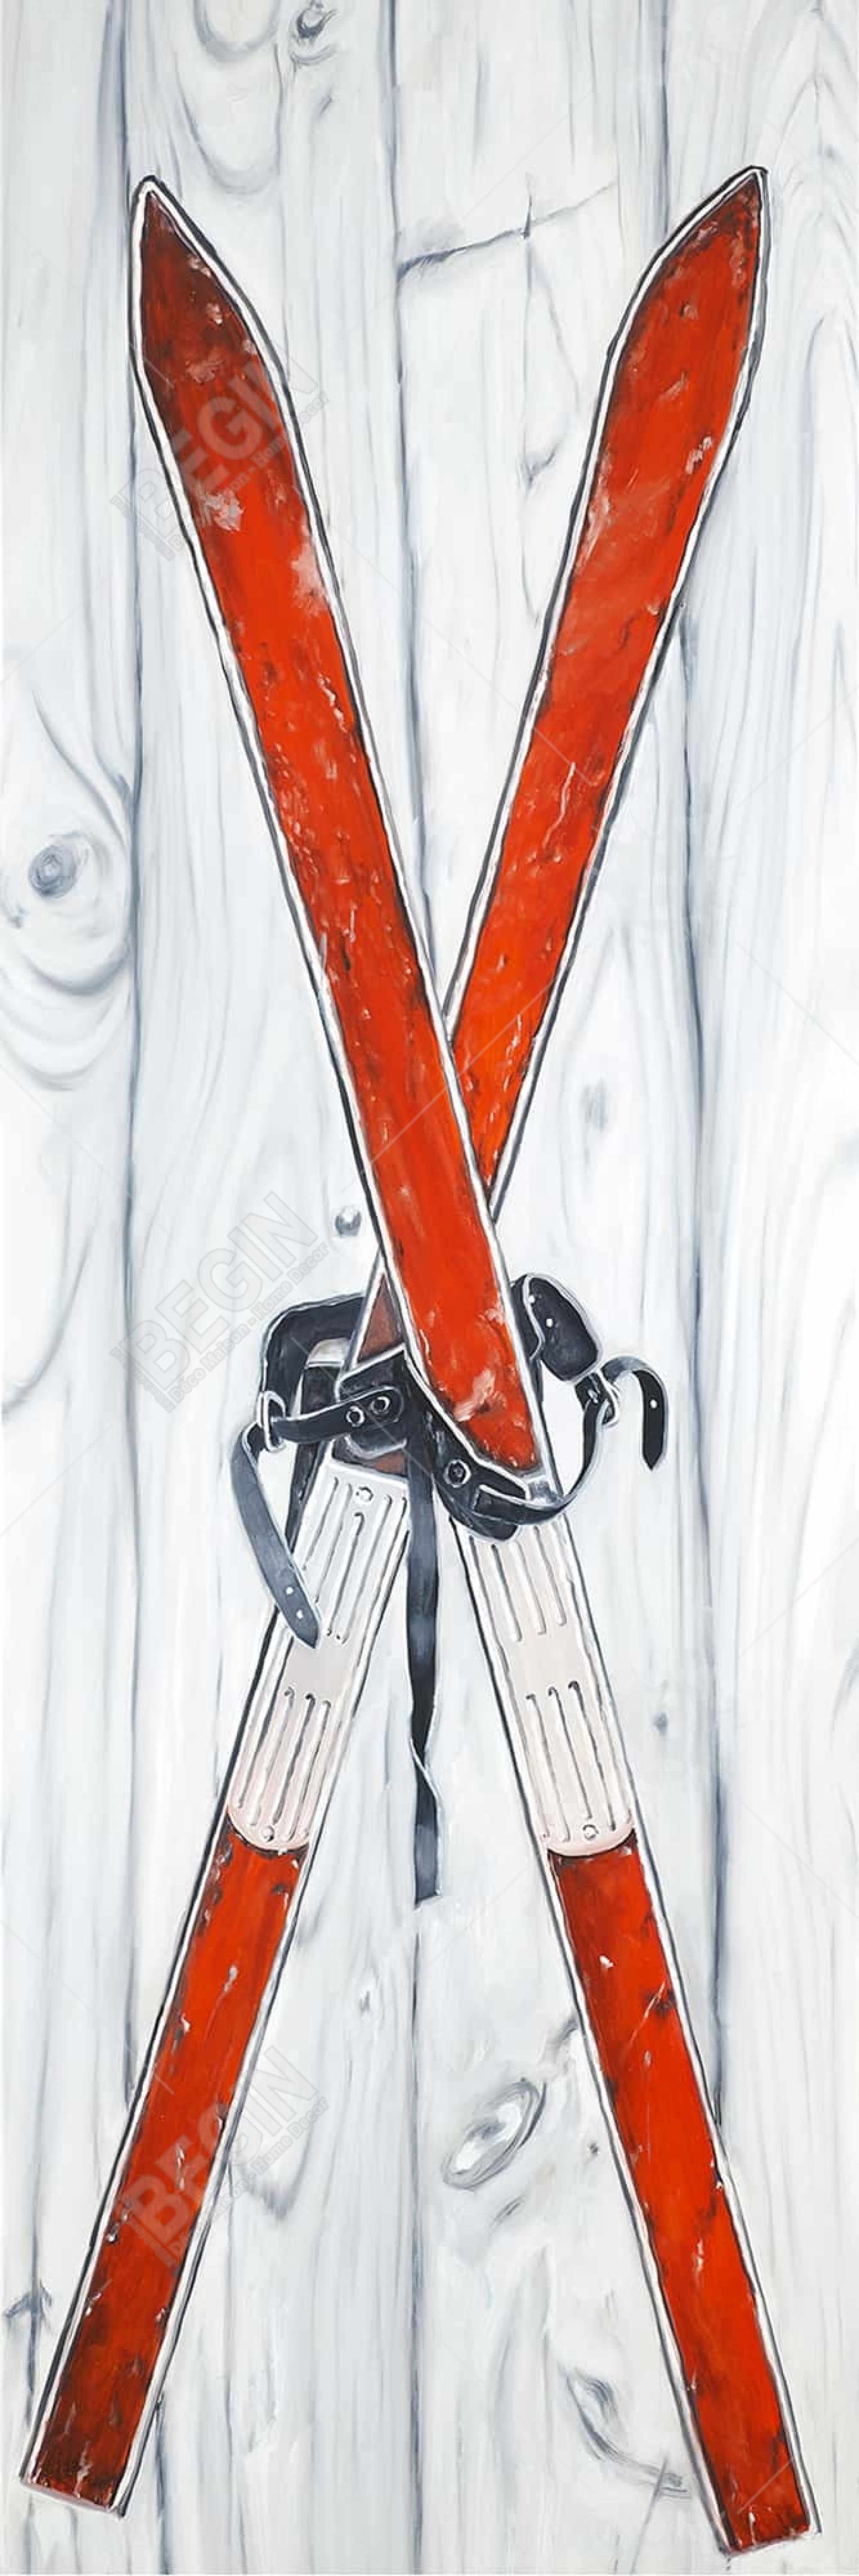 Vintage red ski